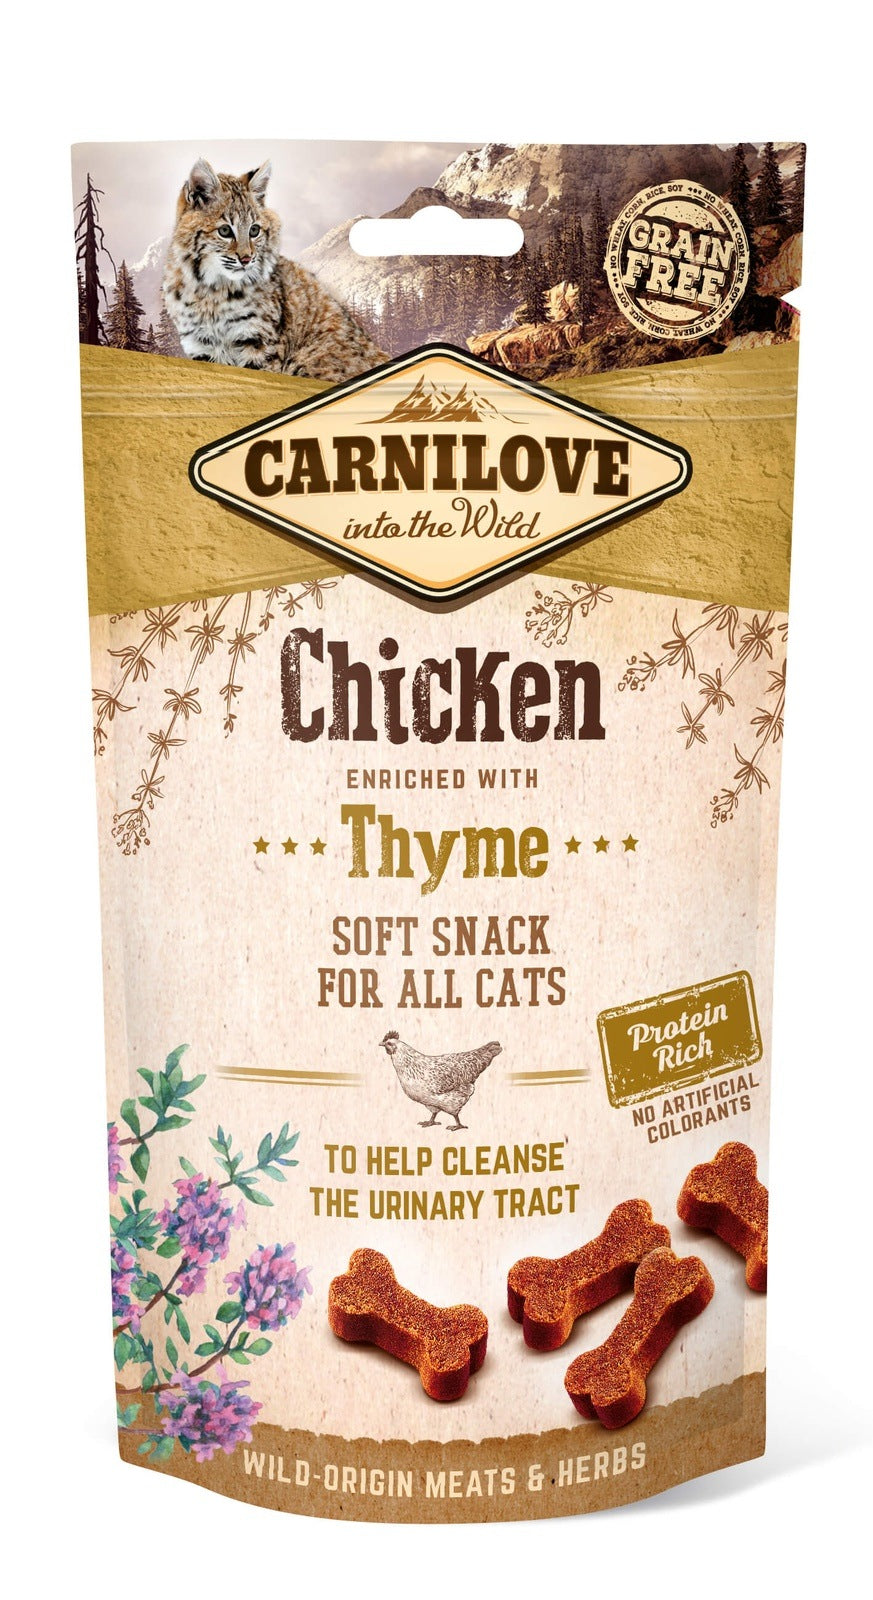 Artikel mit dem Namen Carnilove Cat Soft Snack - Huhn im Shop von zoo.de , dem Onlineshop für nachhaltiges Hundefutter und Katzenfutter.